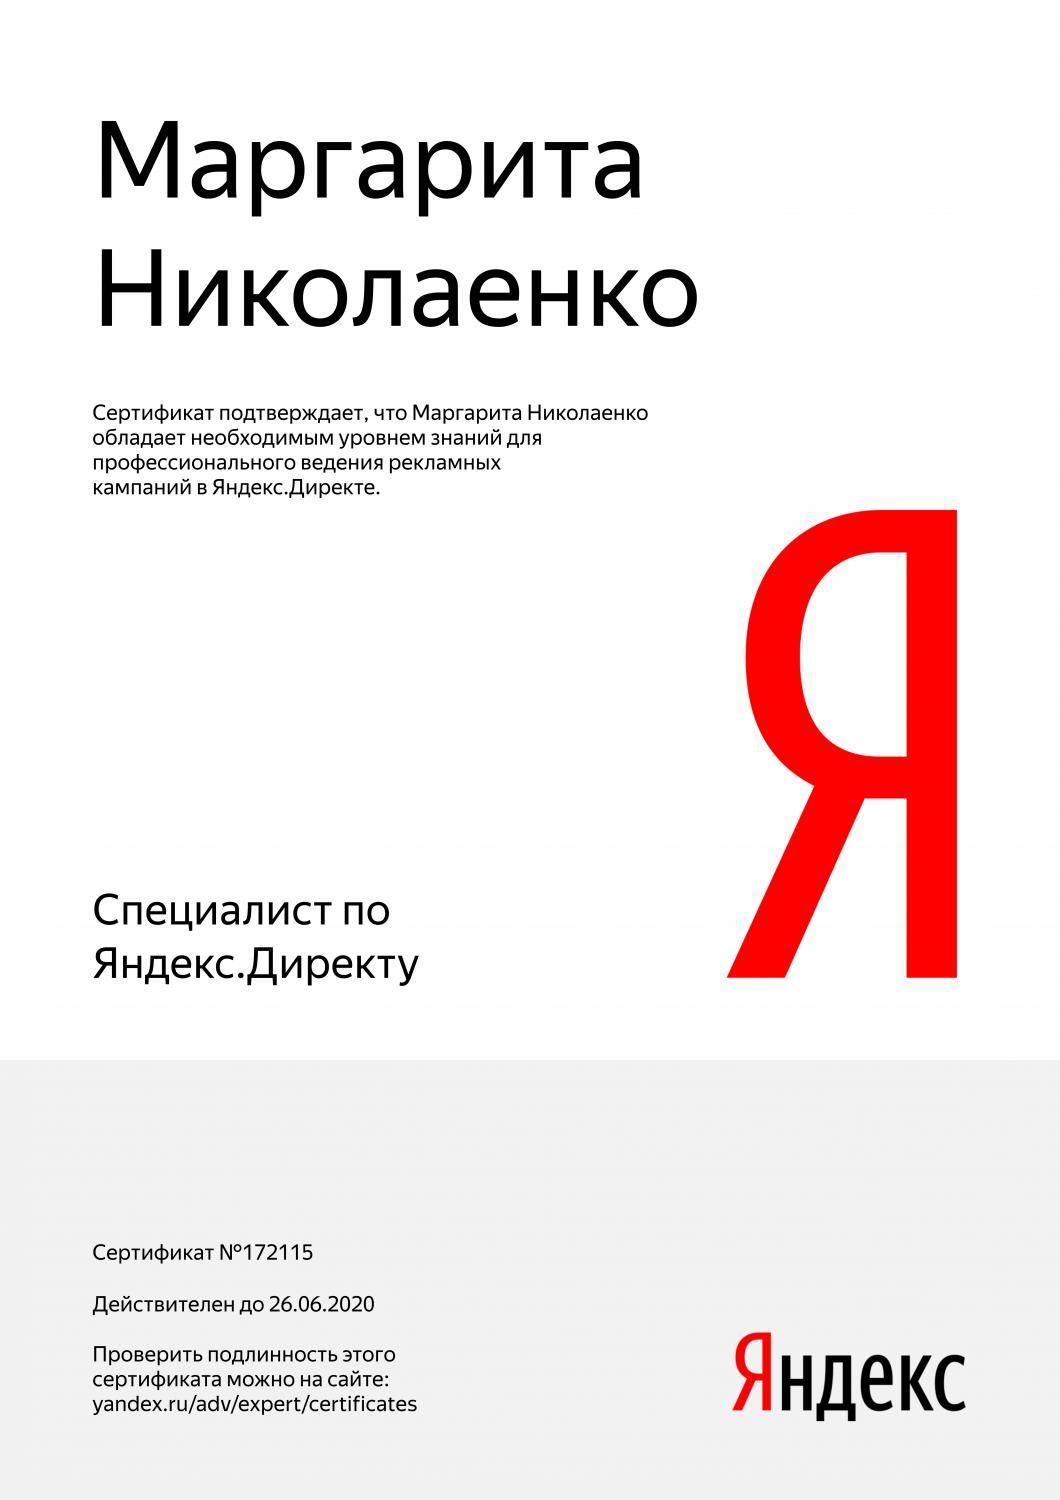 Сертификат специалиста Яндекс. Директ - Николаенко М. в Краснодара